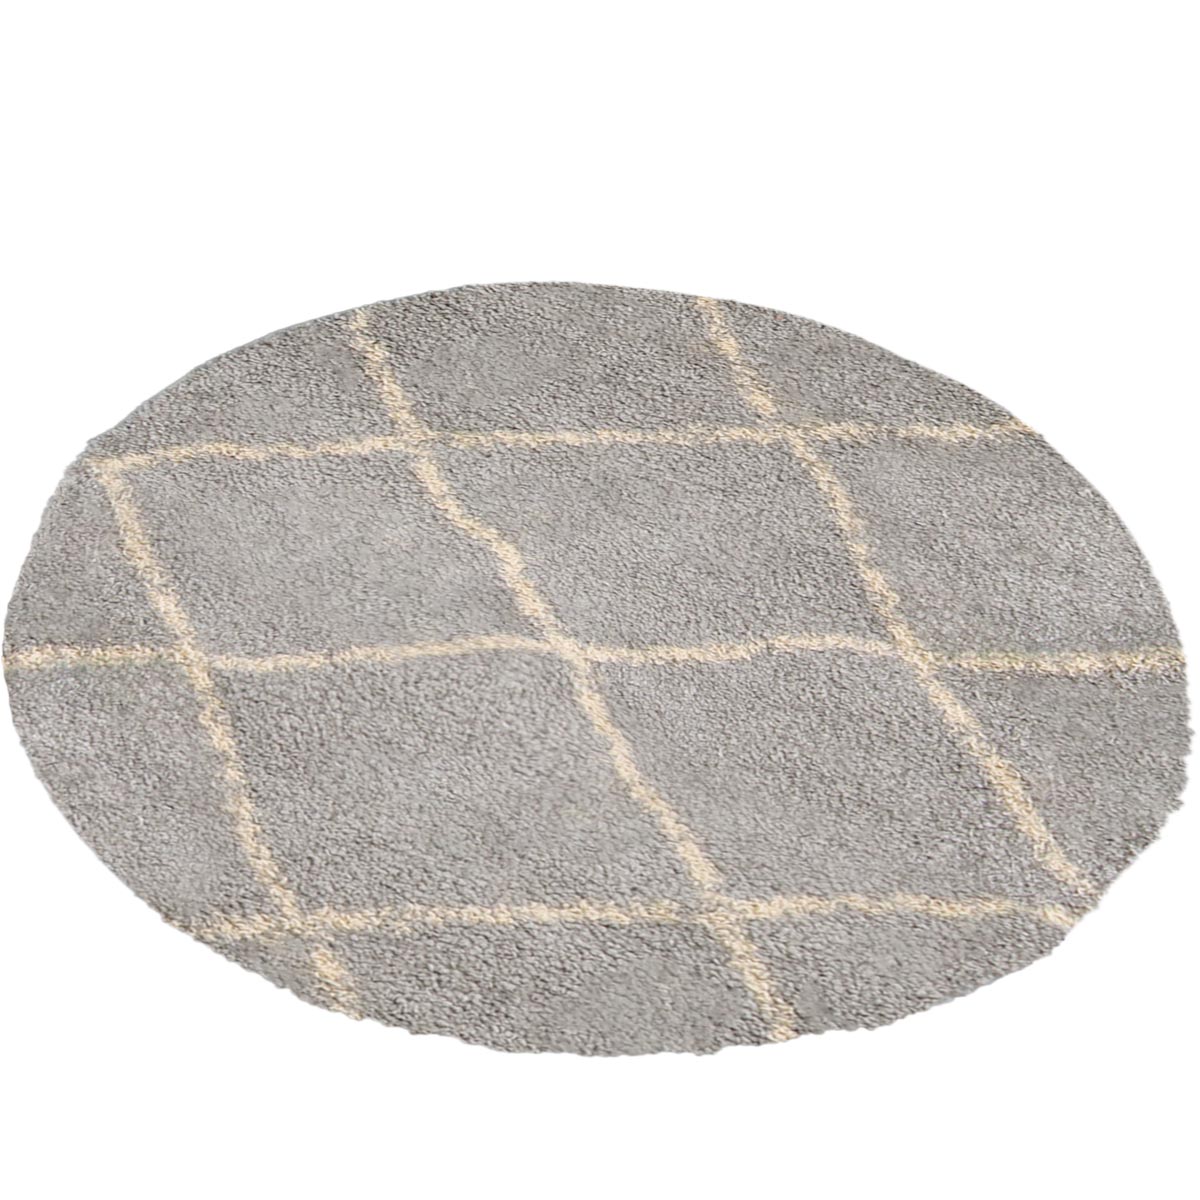 שטיח שאגי מרקש 07 אפור/קרם עגול | השטיח האדום